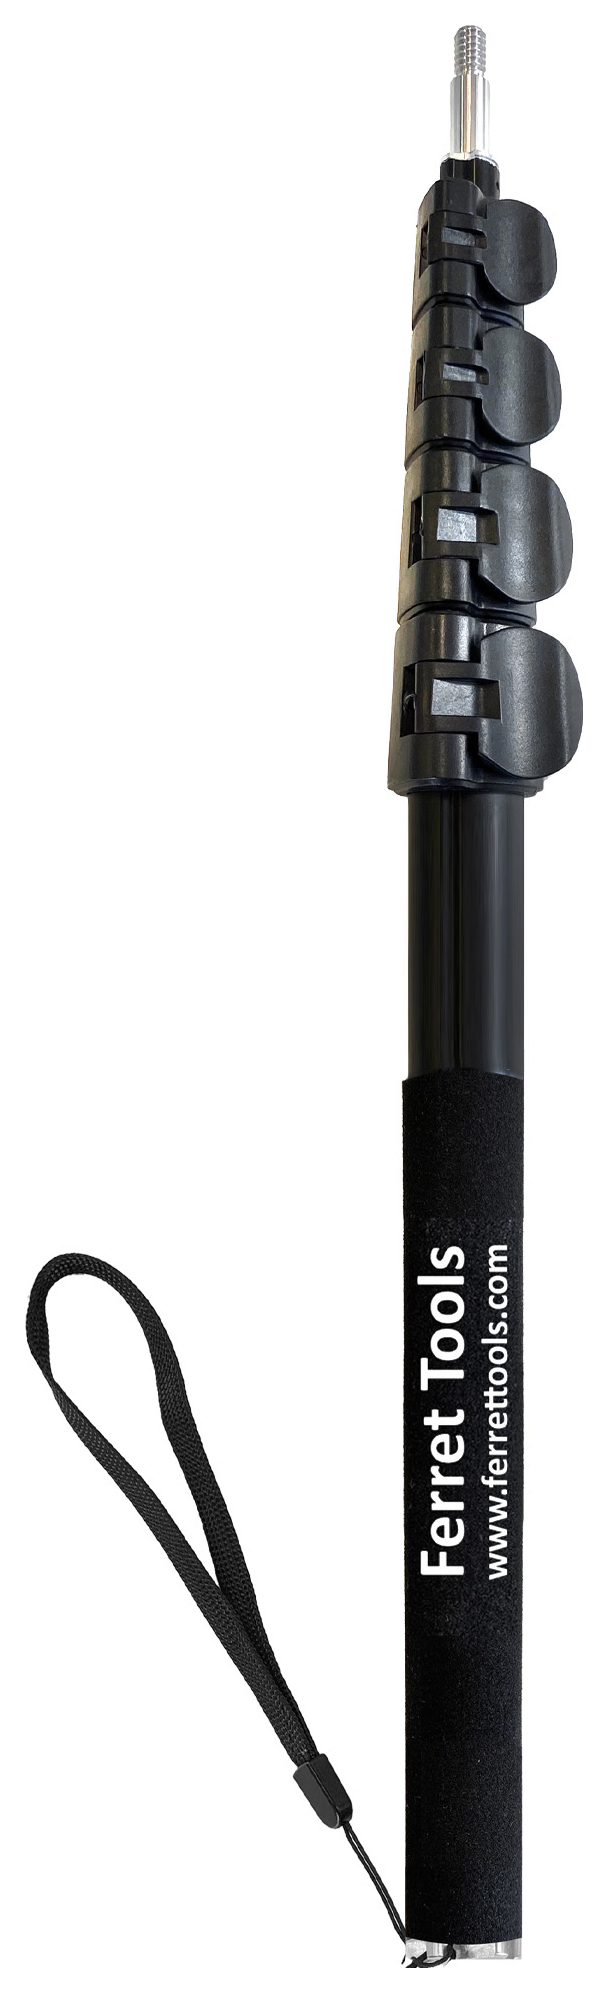 Image of Ferret Stick CFST-55C Extendable Lockable Aluminum Pole - 1.4m